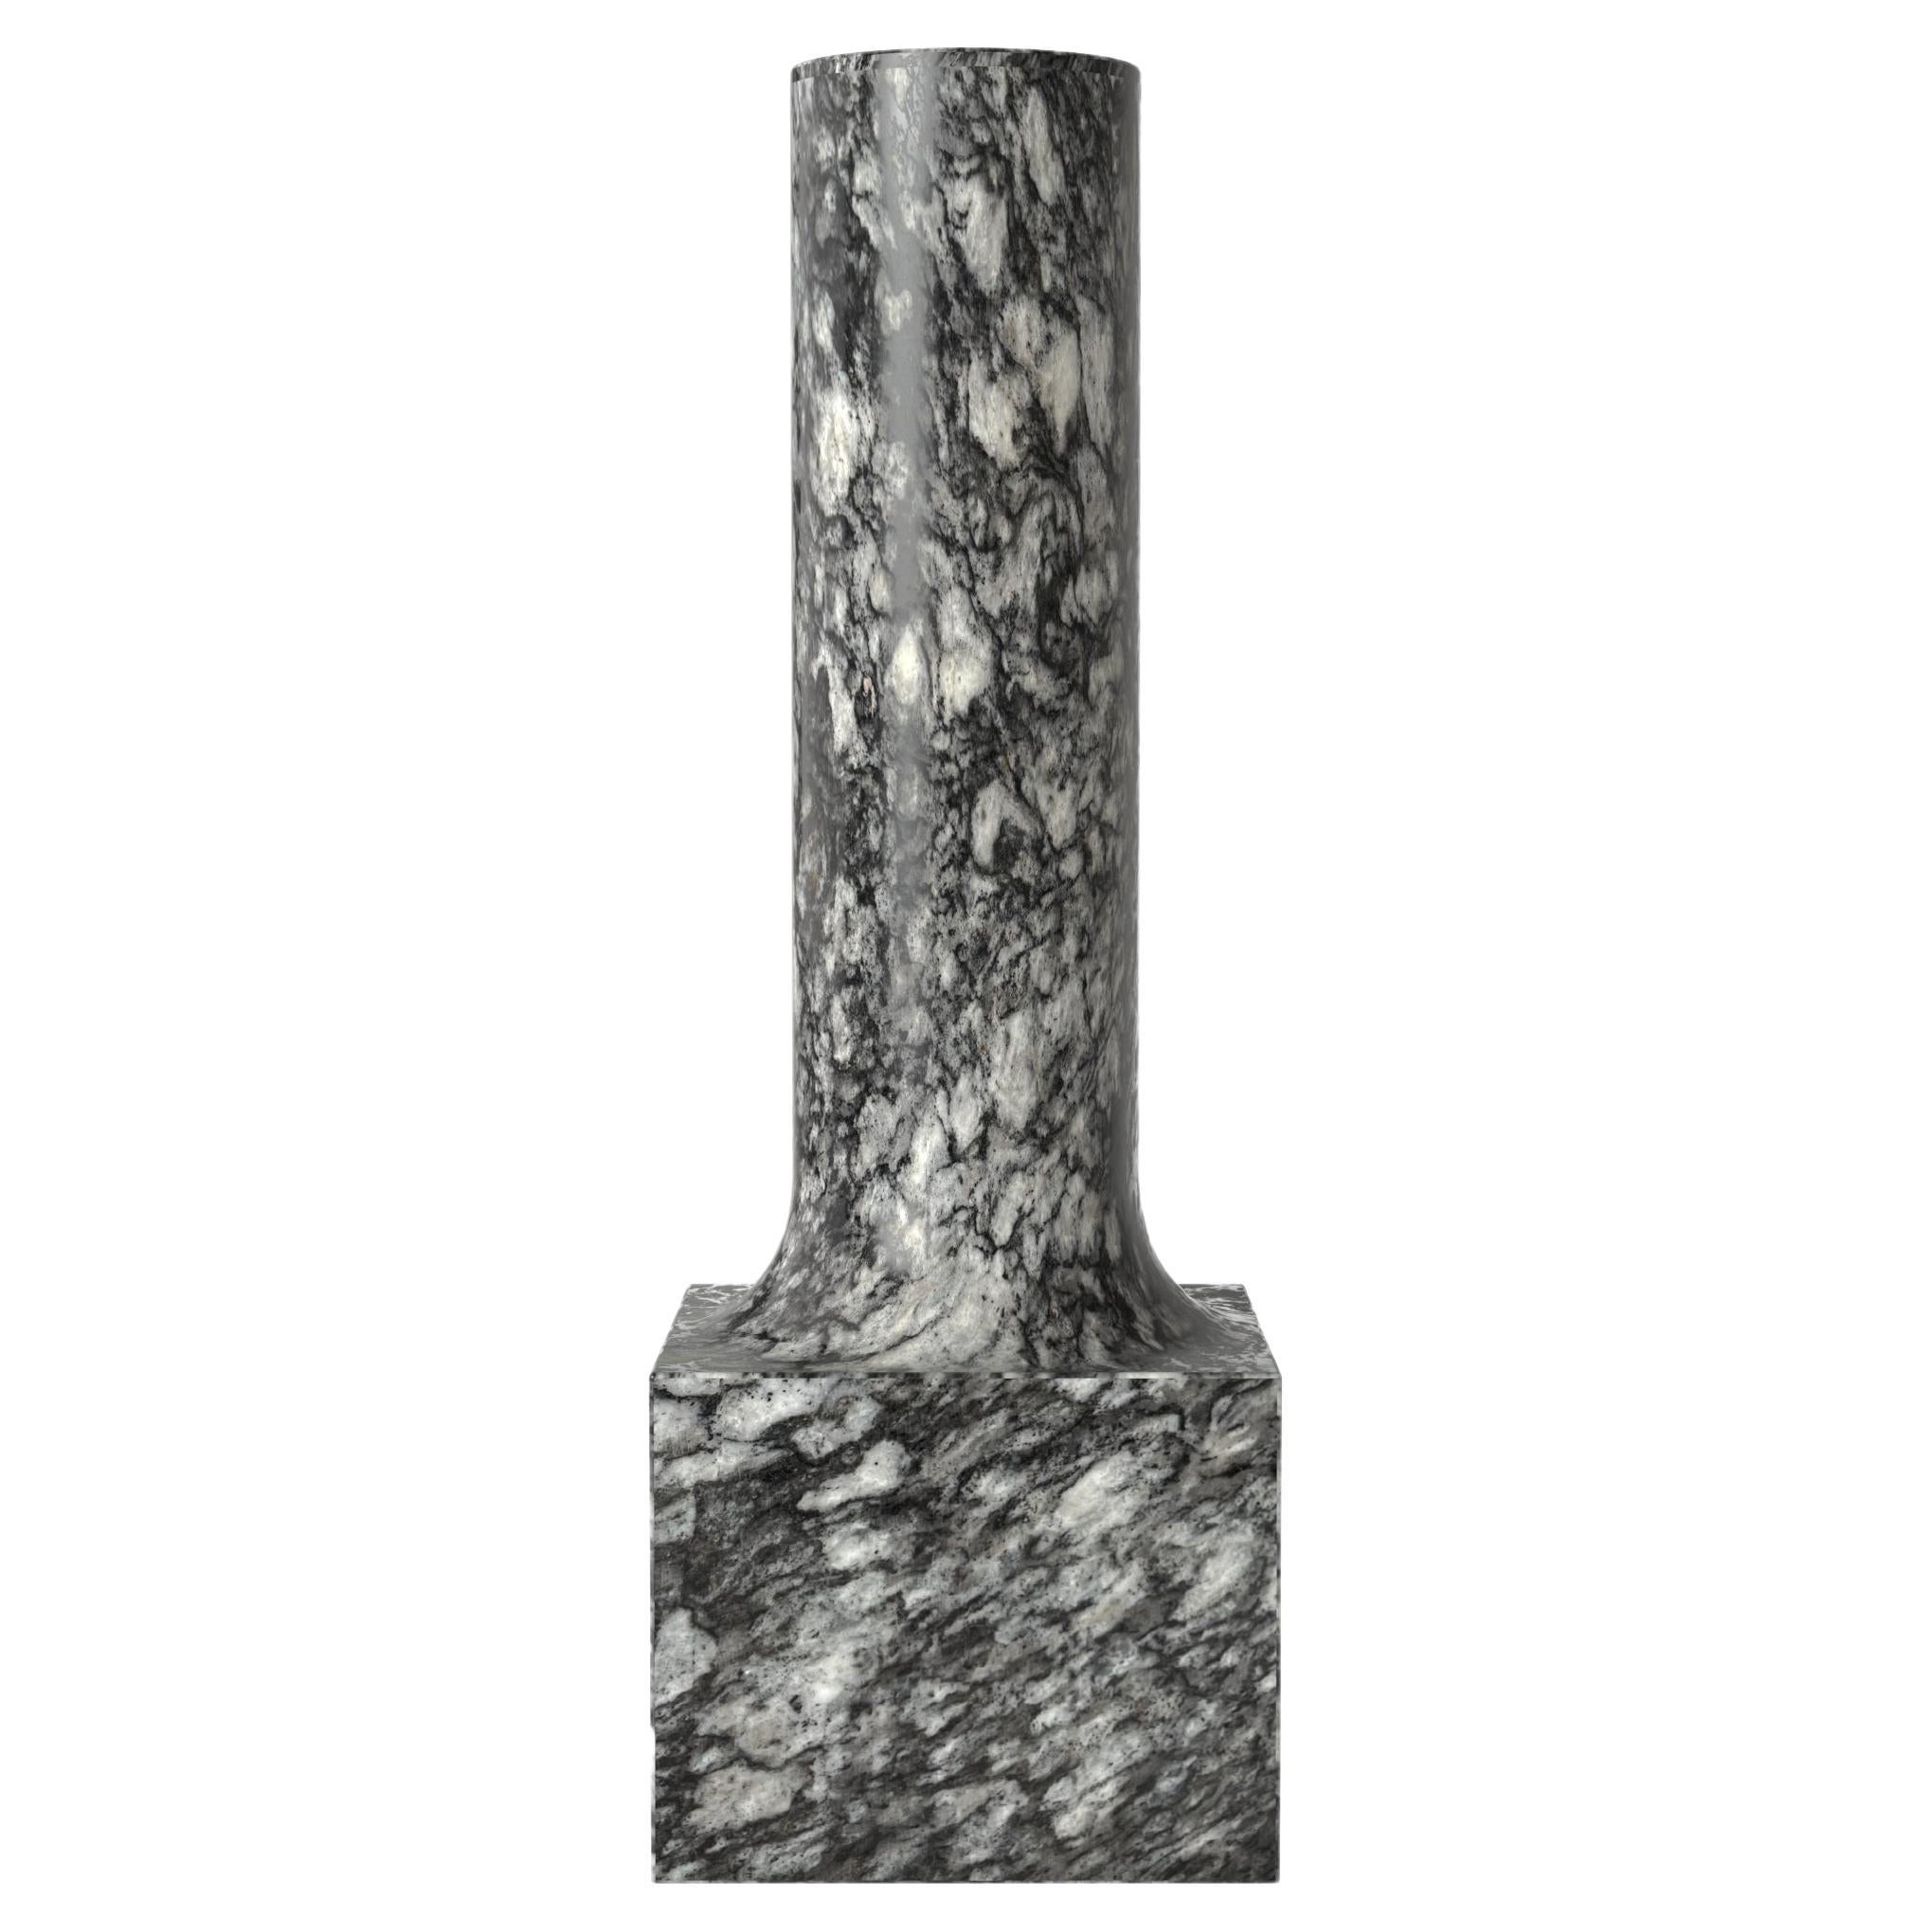 Contemporary Limited Edition Granite Stone Vase, Palazzo V2 by Edizione Limitata